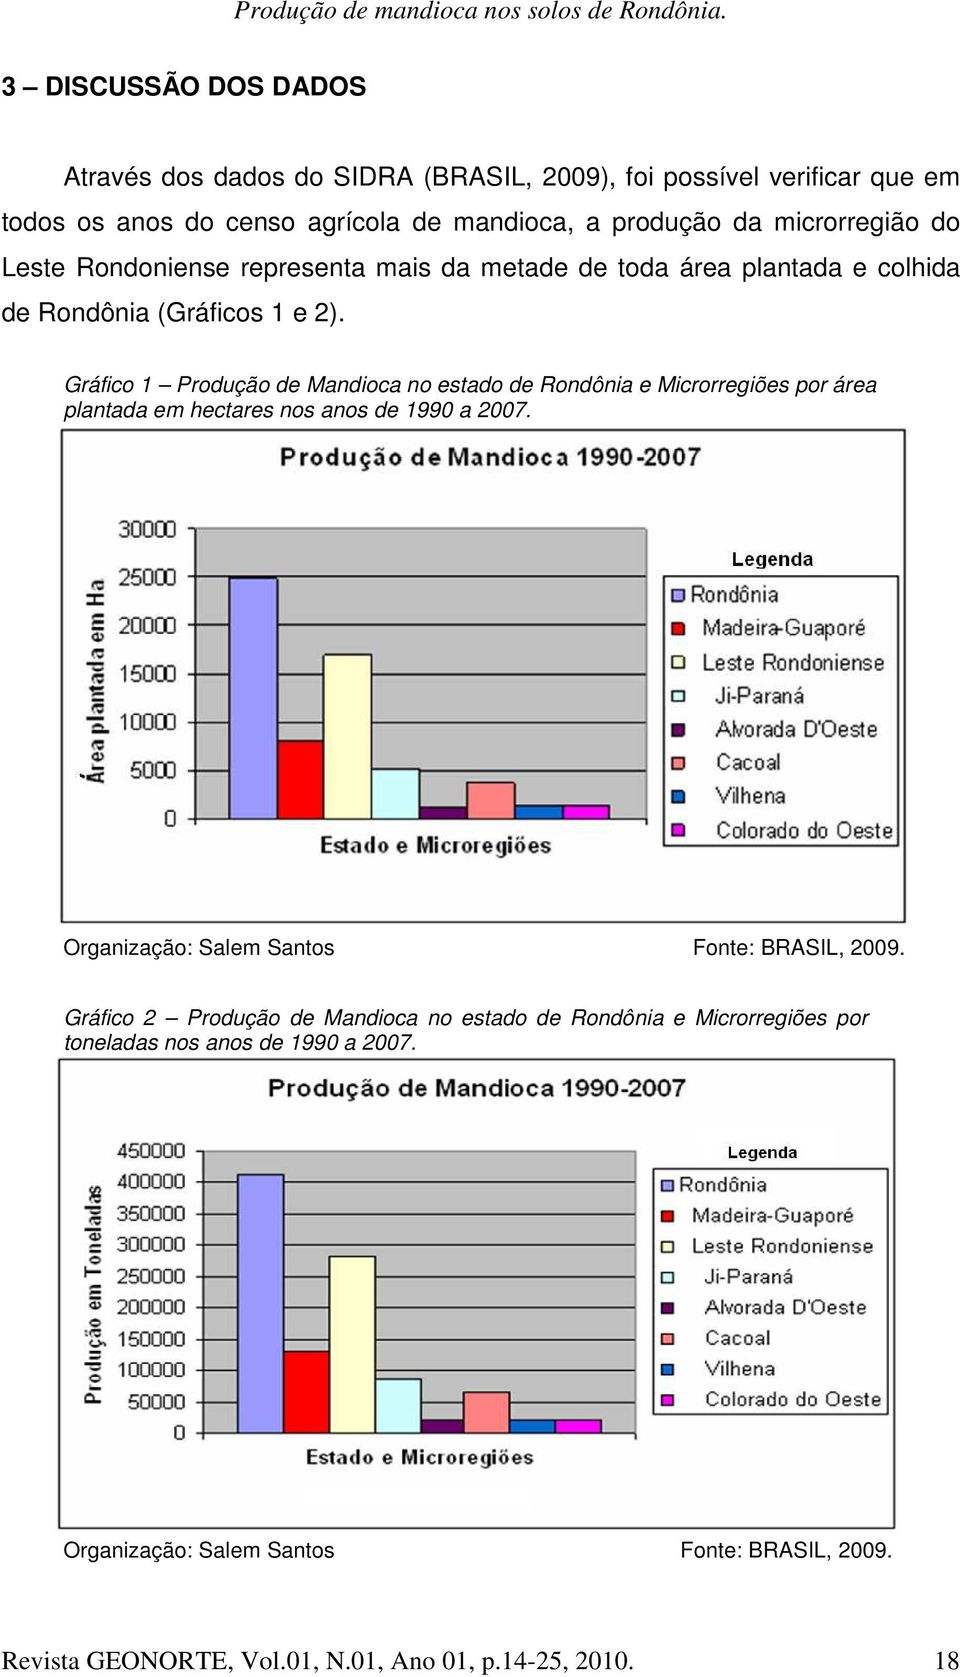 Gráfico 1 Produção de Mandioca no estado de Rondônia e Microrregiões por área plantada em hectares nos anos de 1990 a 2007.